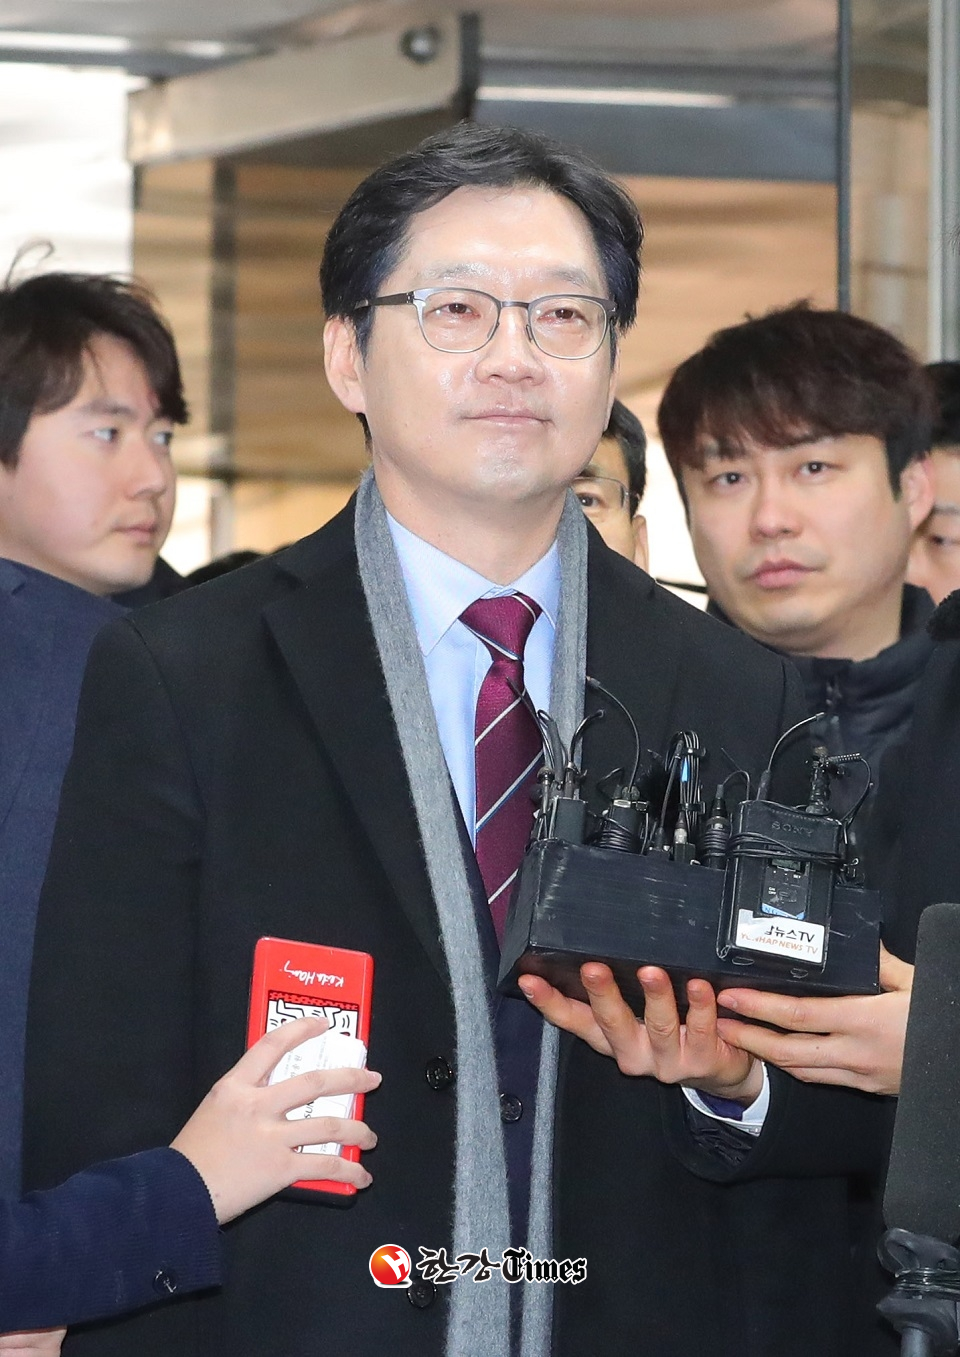 더불어민주당은 법정구속된 김경수 경남지사의 판결은 짜맞추기 재판이라며 강한 유감을 표명했다 (사진=뉴시스)